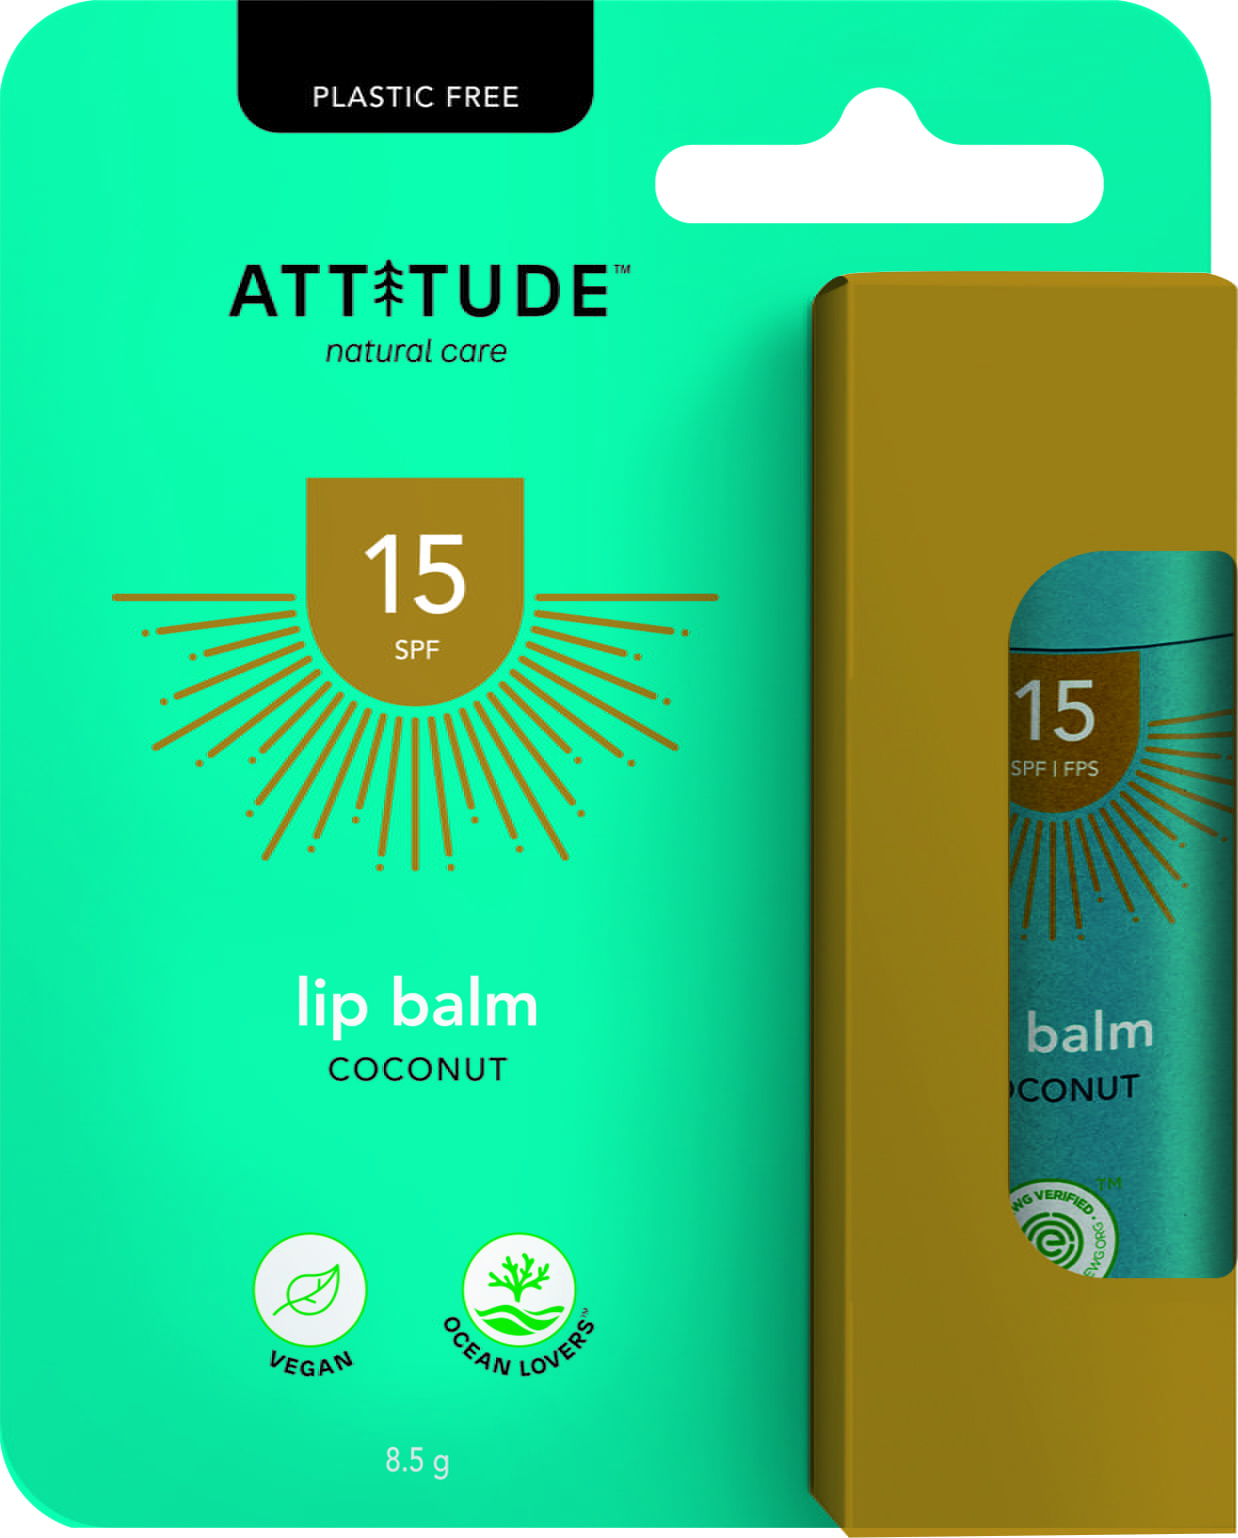 Attitude Coconut Lip Balm SPF 15